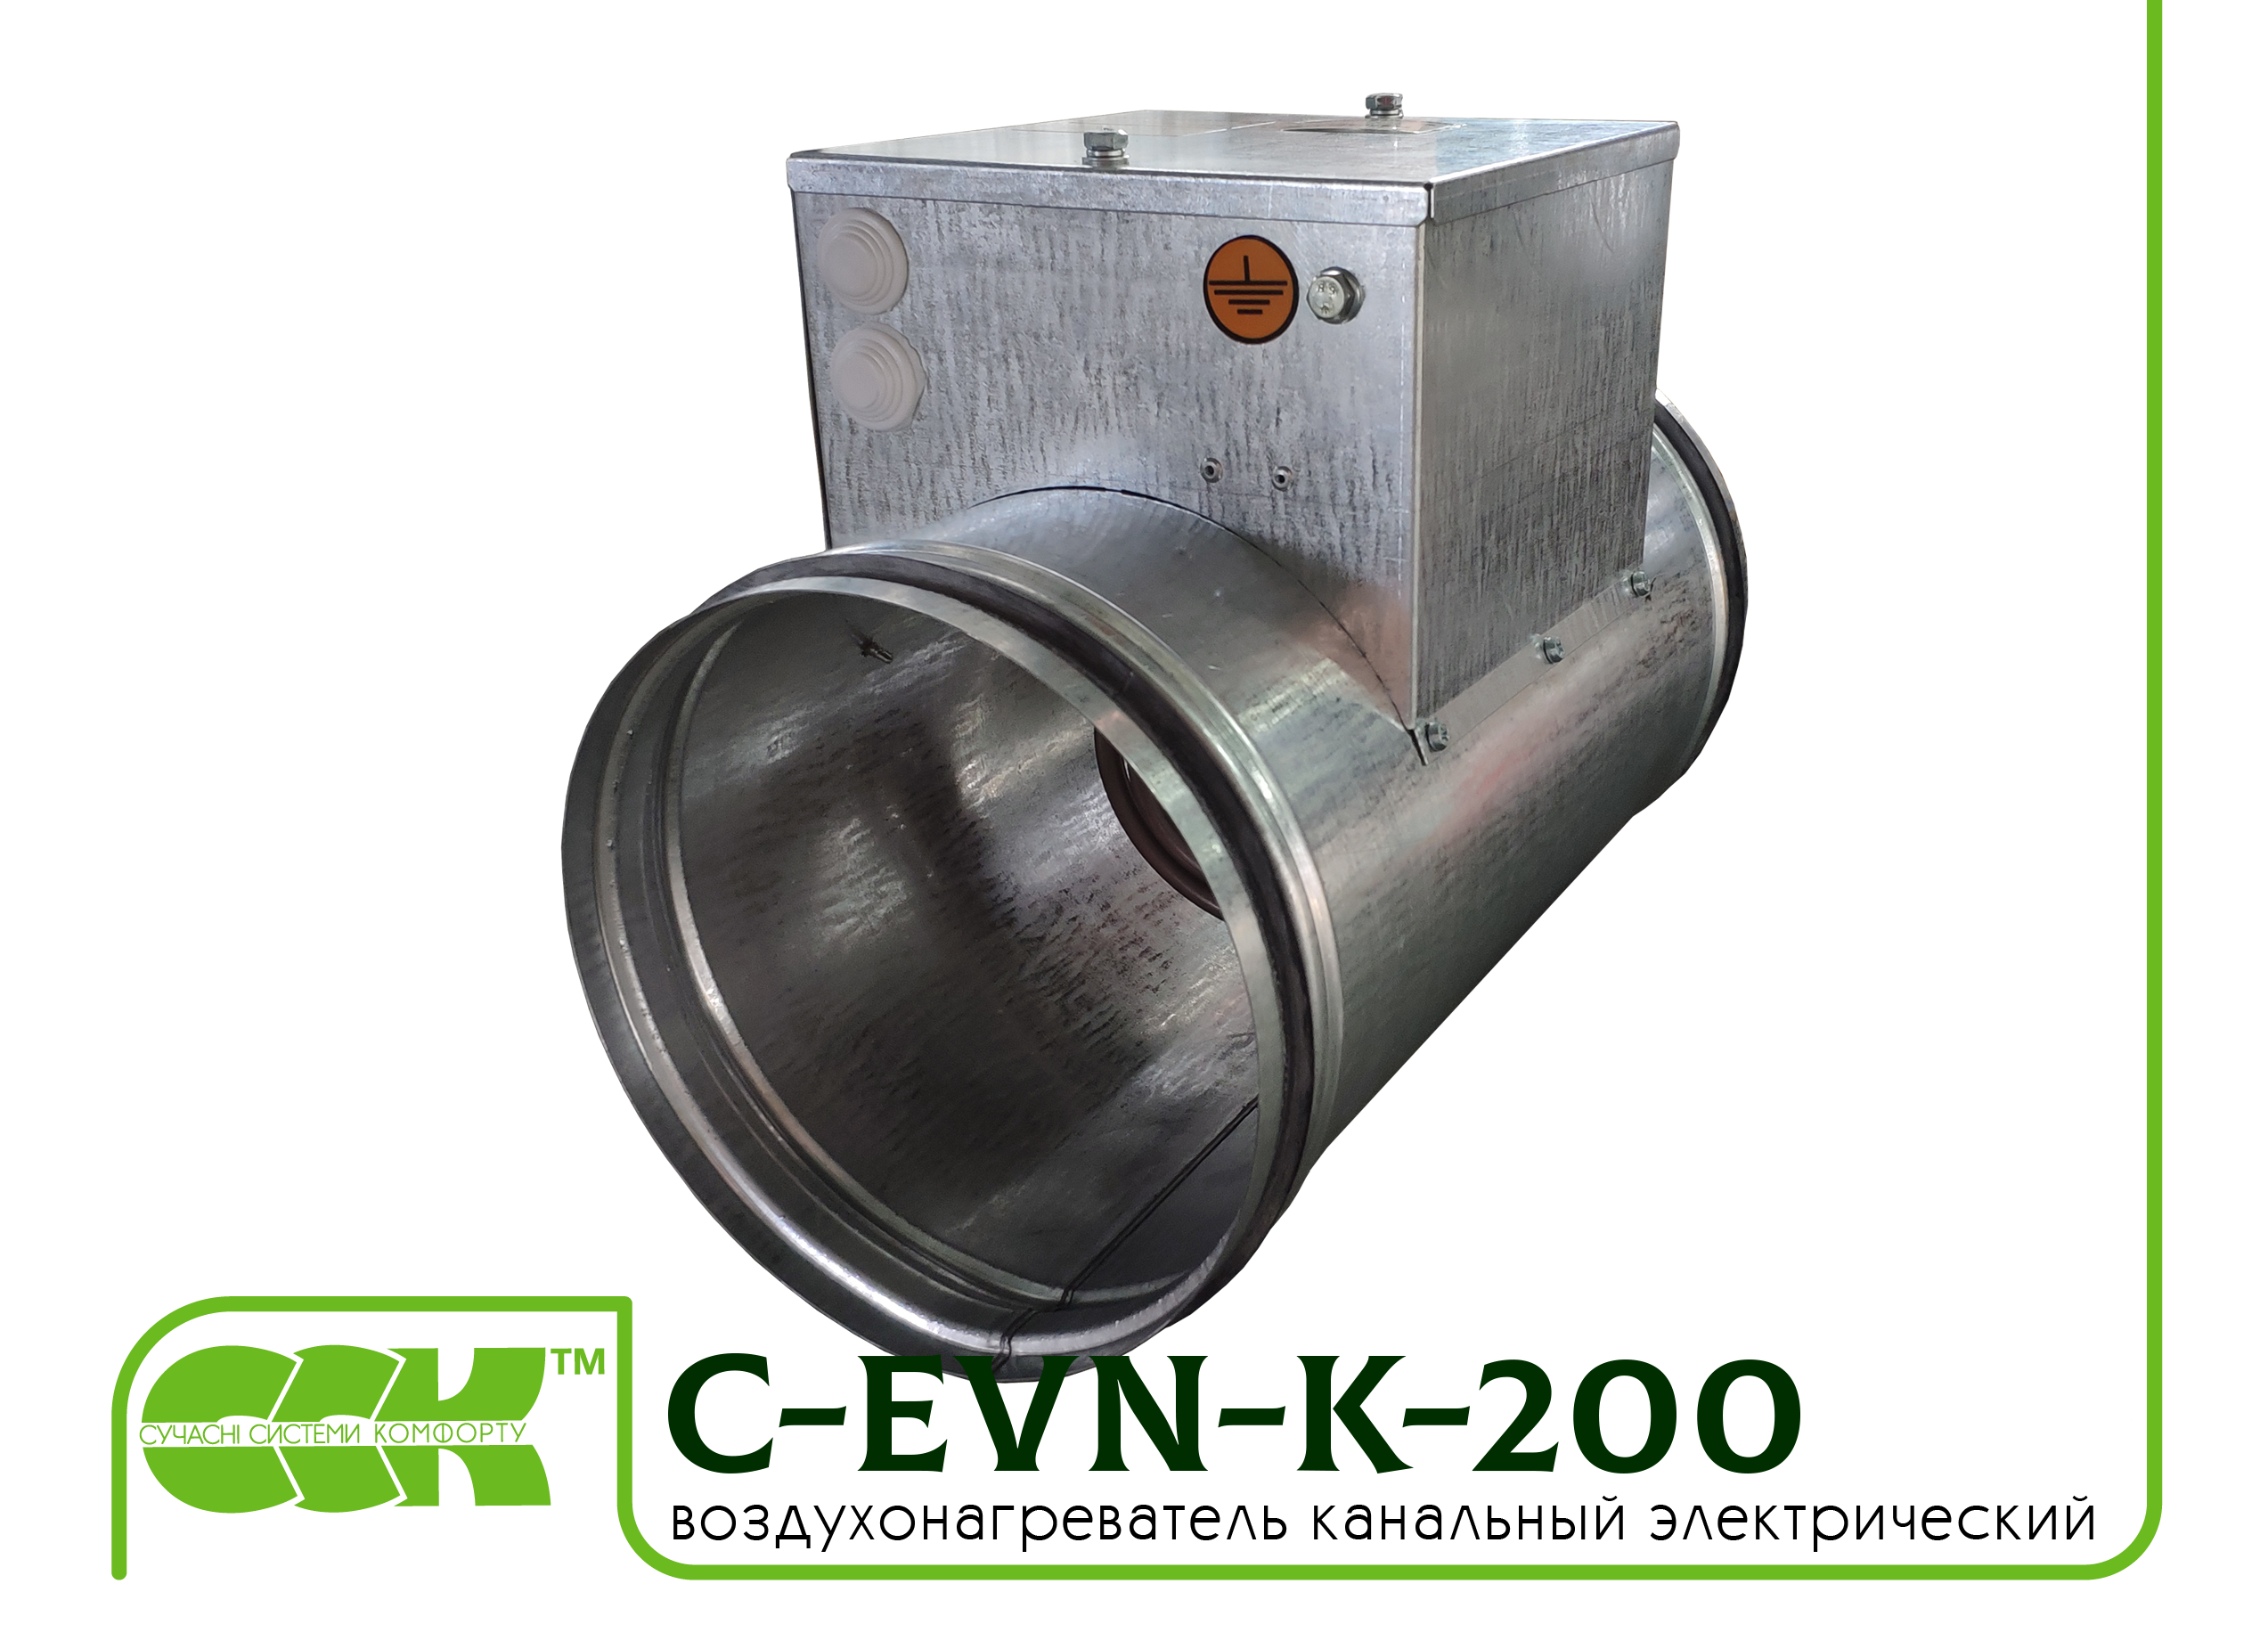 Воздухонагреватель электрический для круглых каналов C-EVN-K-200-4,5